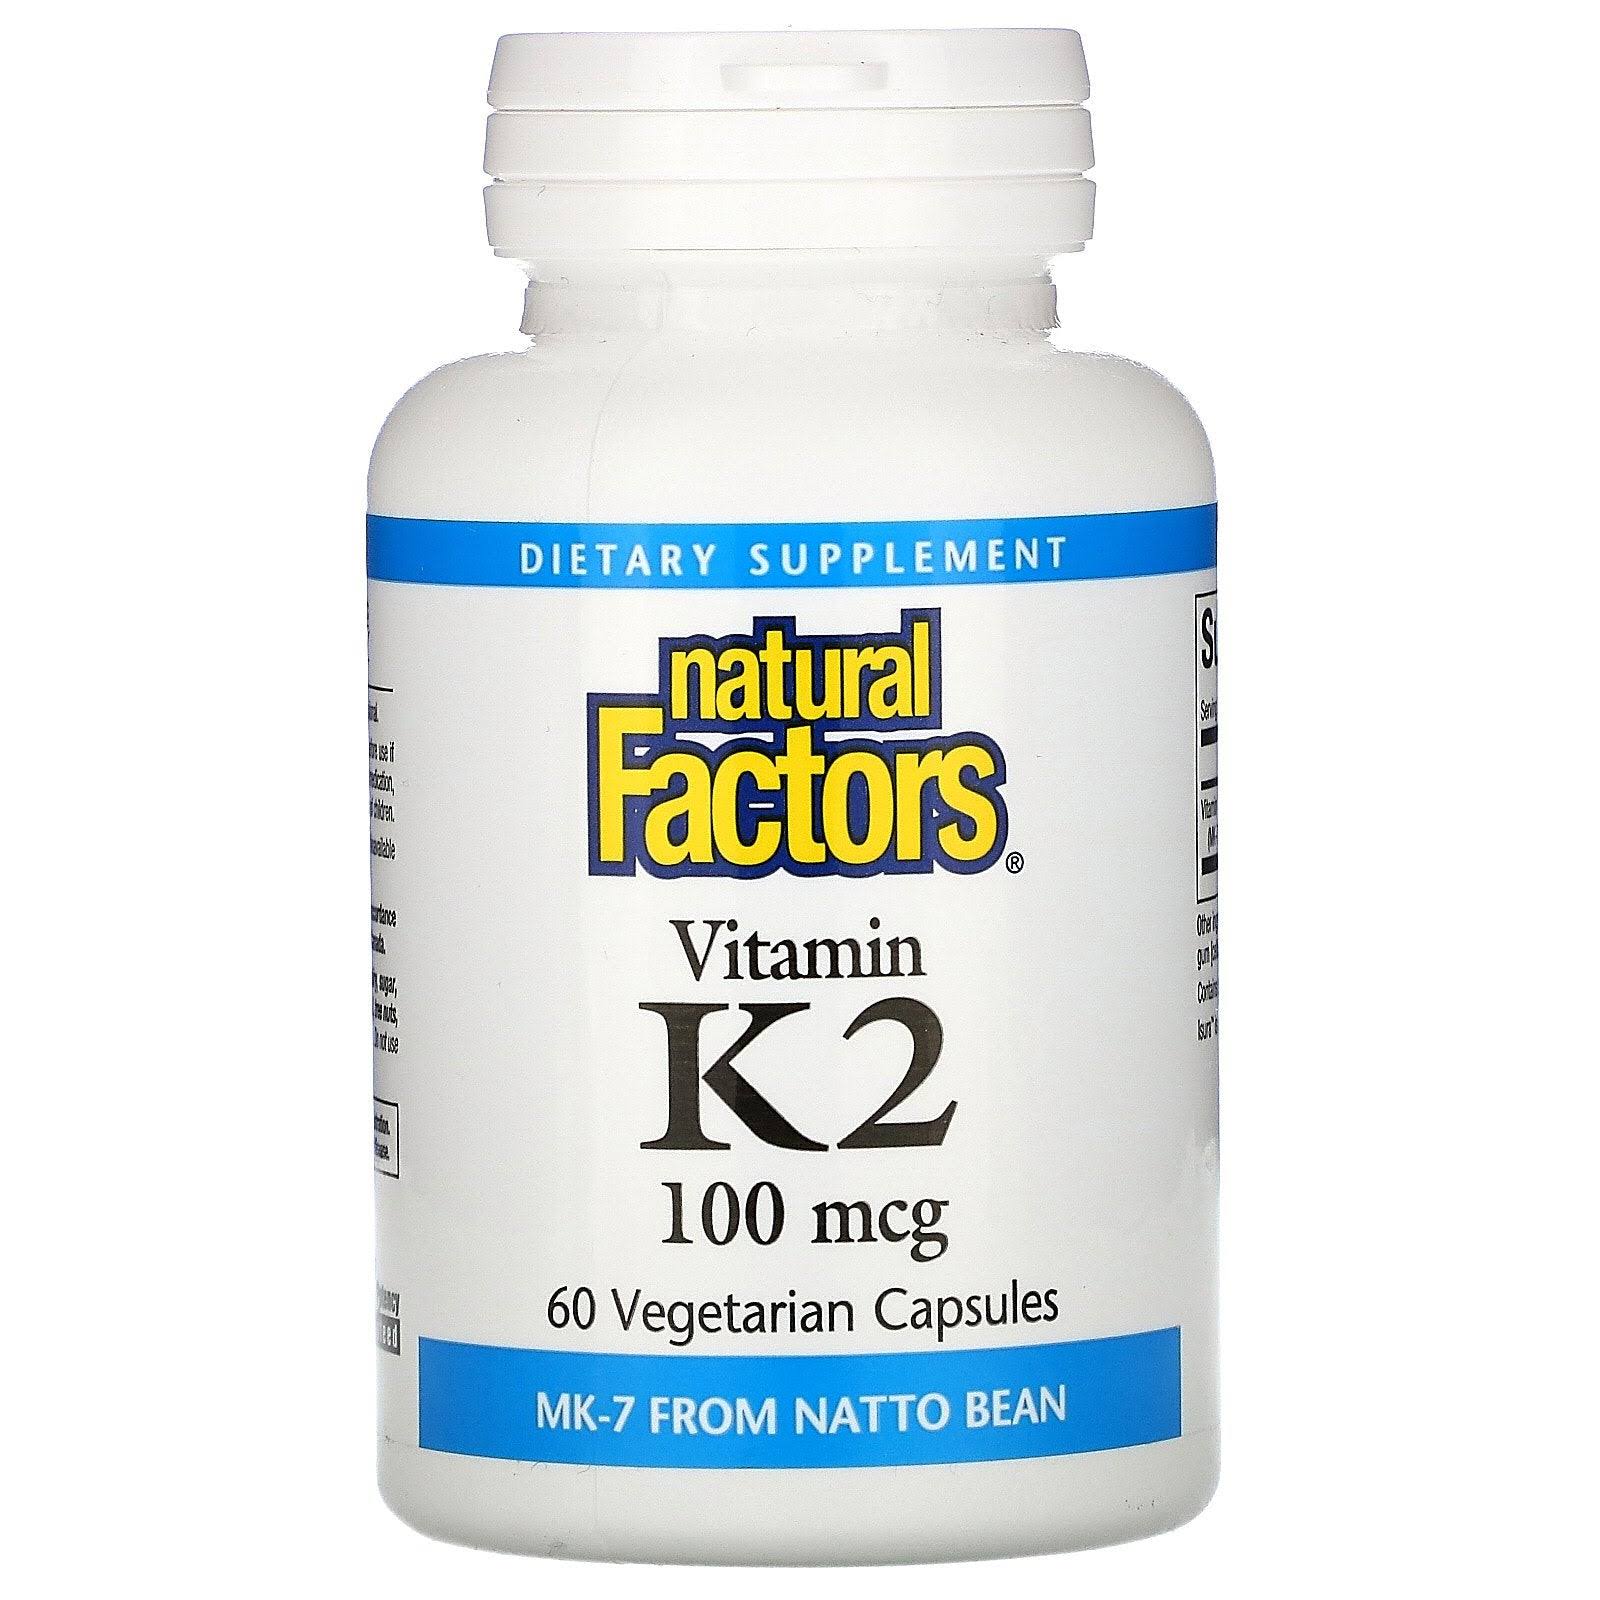 Natural Factors Vitamin K2 100mcg Capsules - x60